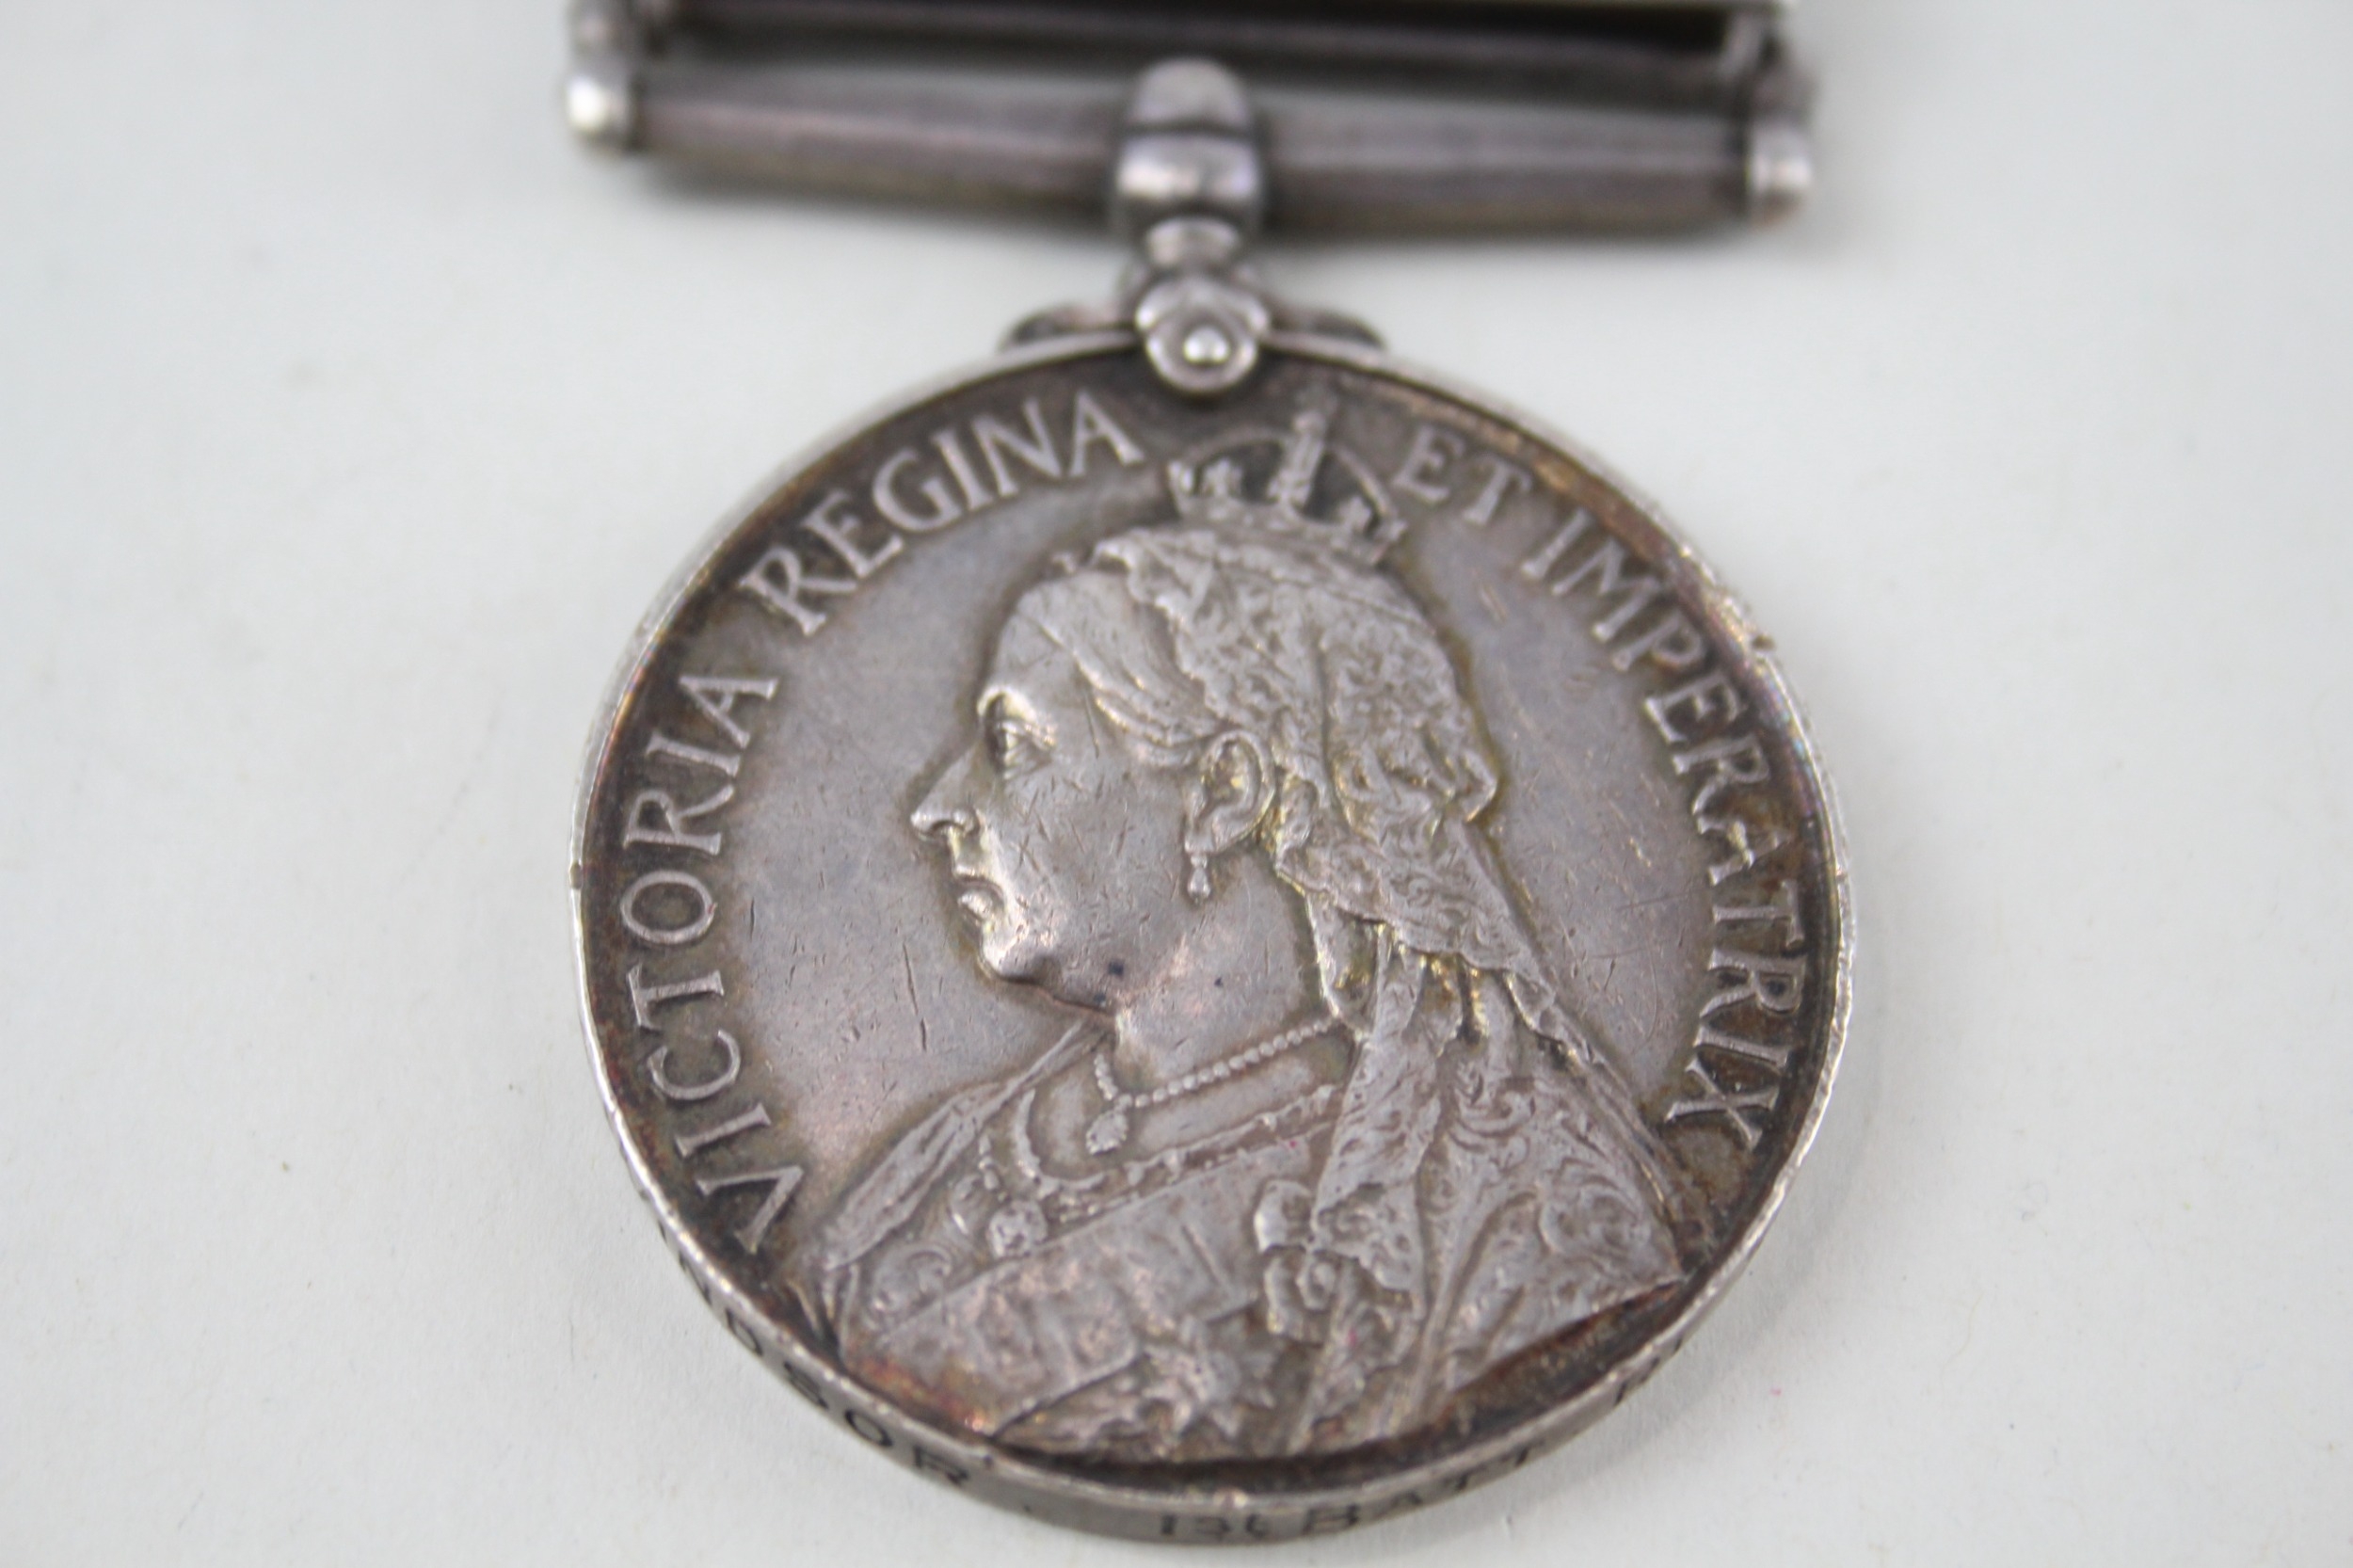 Boer War Queens South Africa Medal Named 2908 C. Windsor - Image 3 of 6